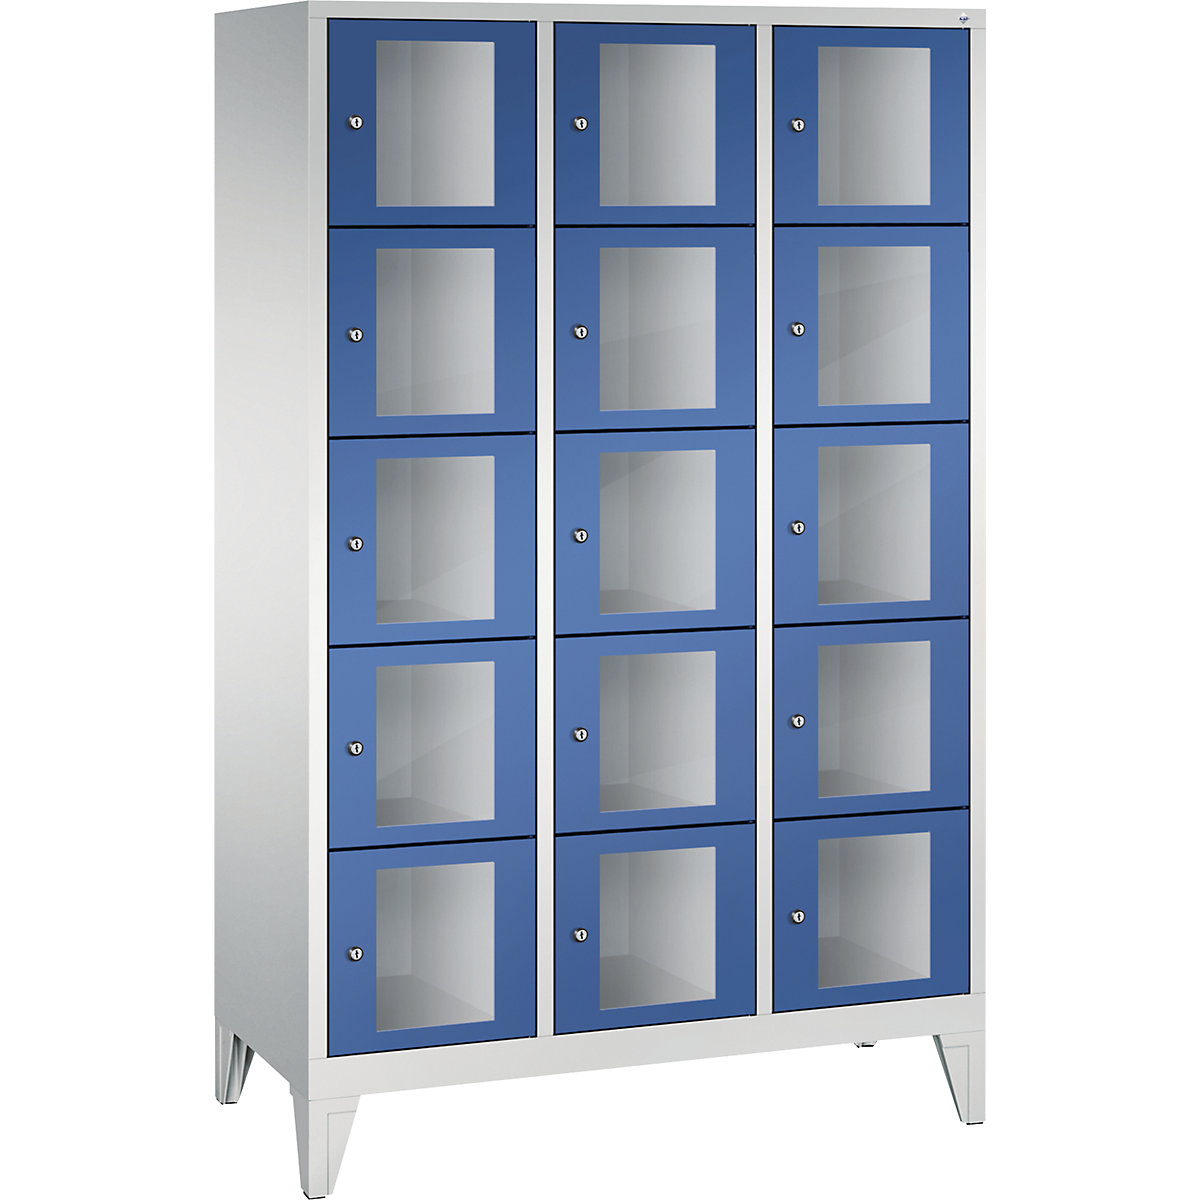 Skříň s boxy CLASSIC, výška boxu 295 mm, s nohami – C+P, 15 boxy, šířka 1200 mm, dveře enciánová modrá-5